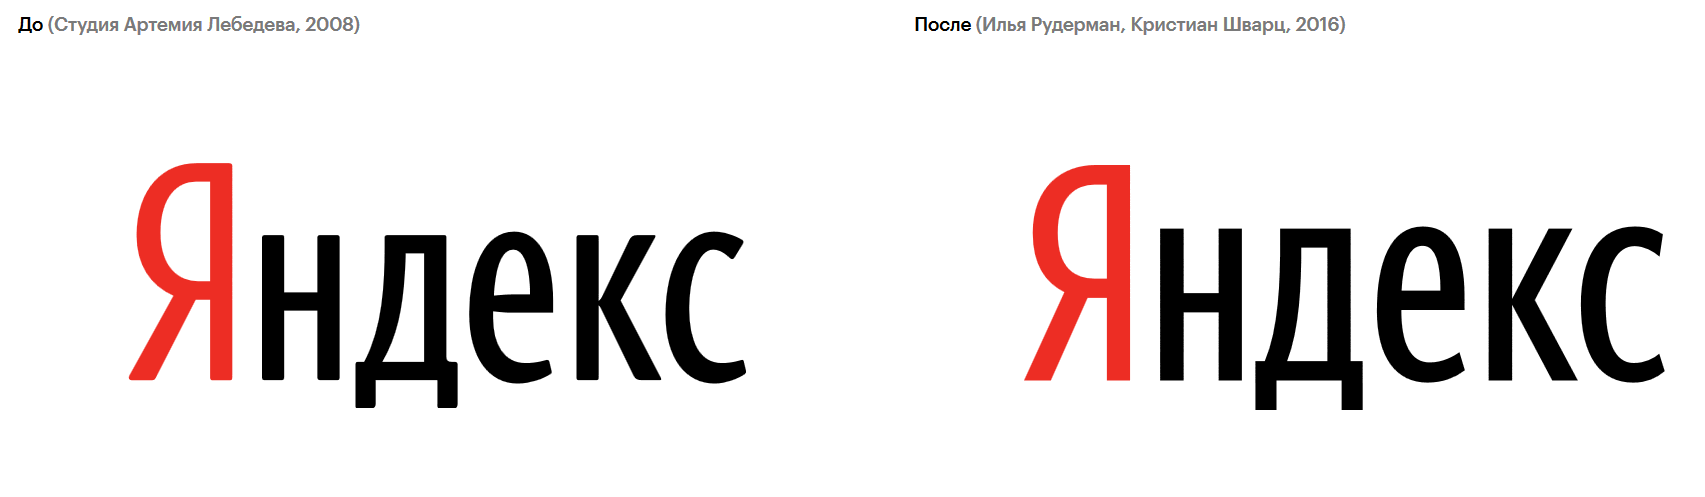 Яндекс поменял логотип